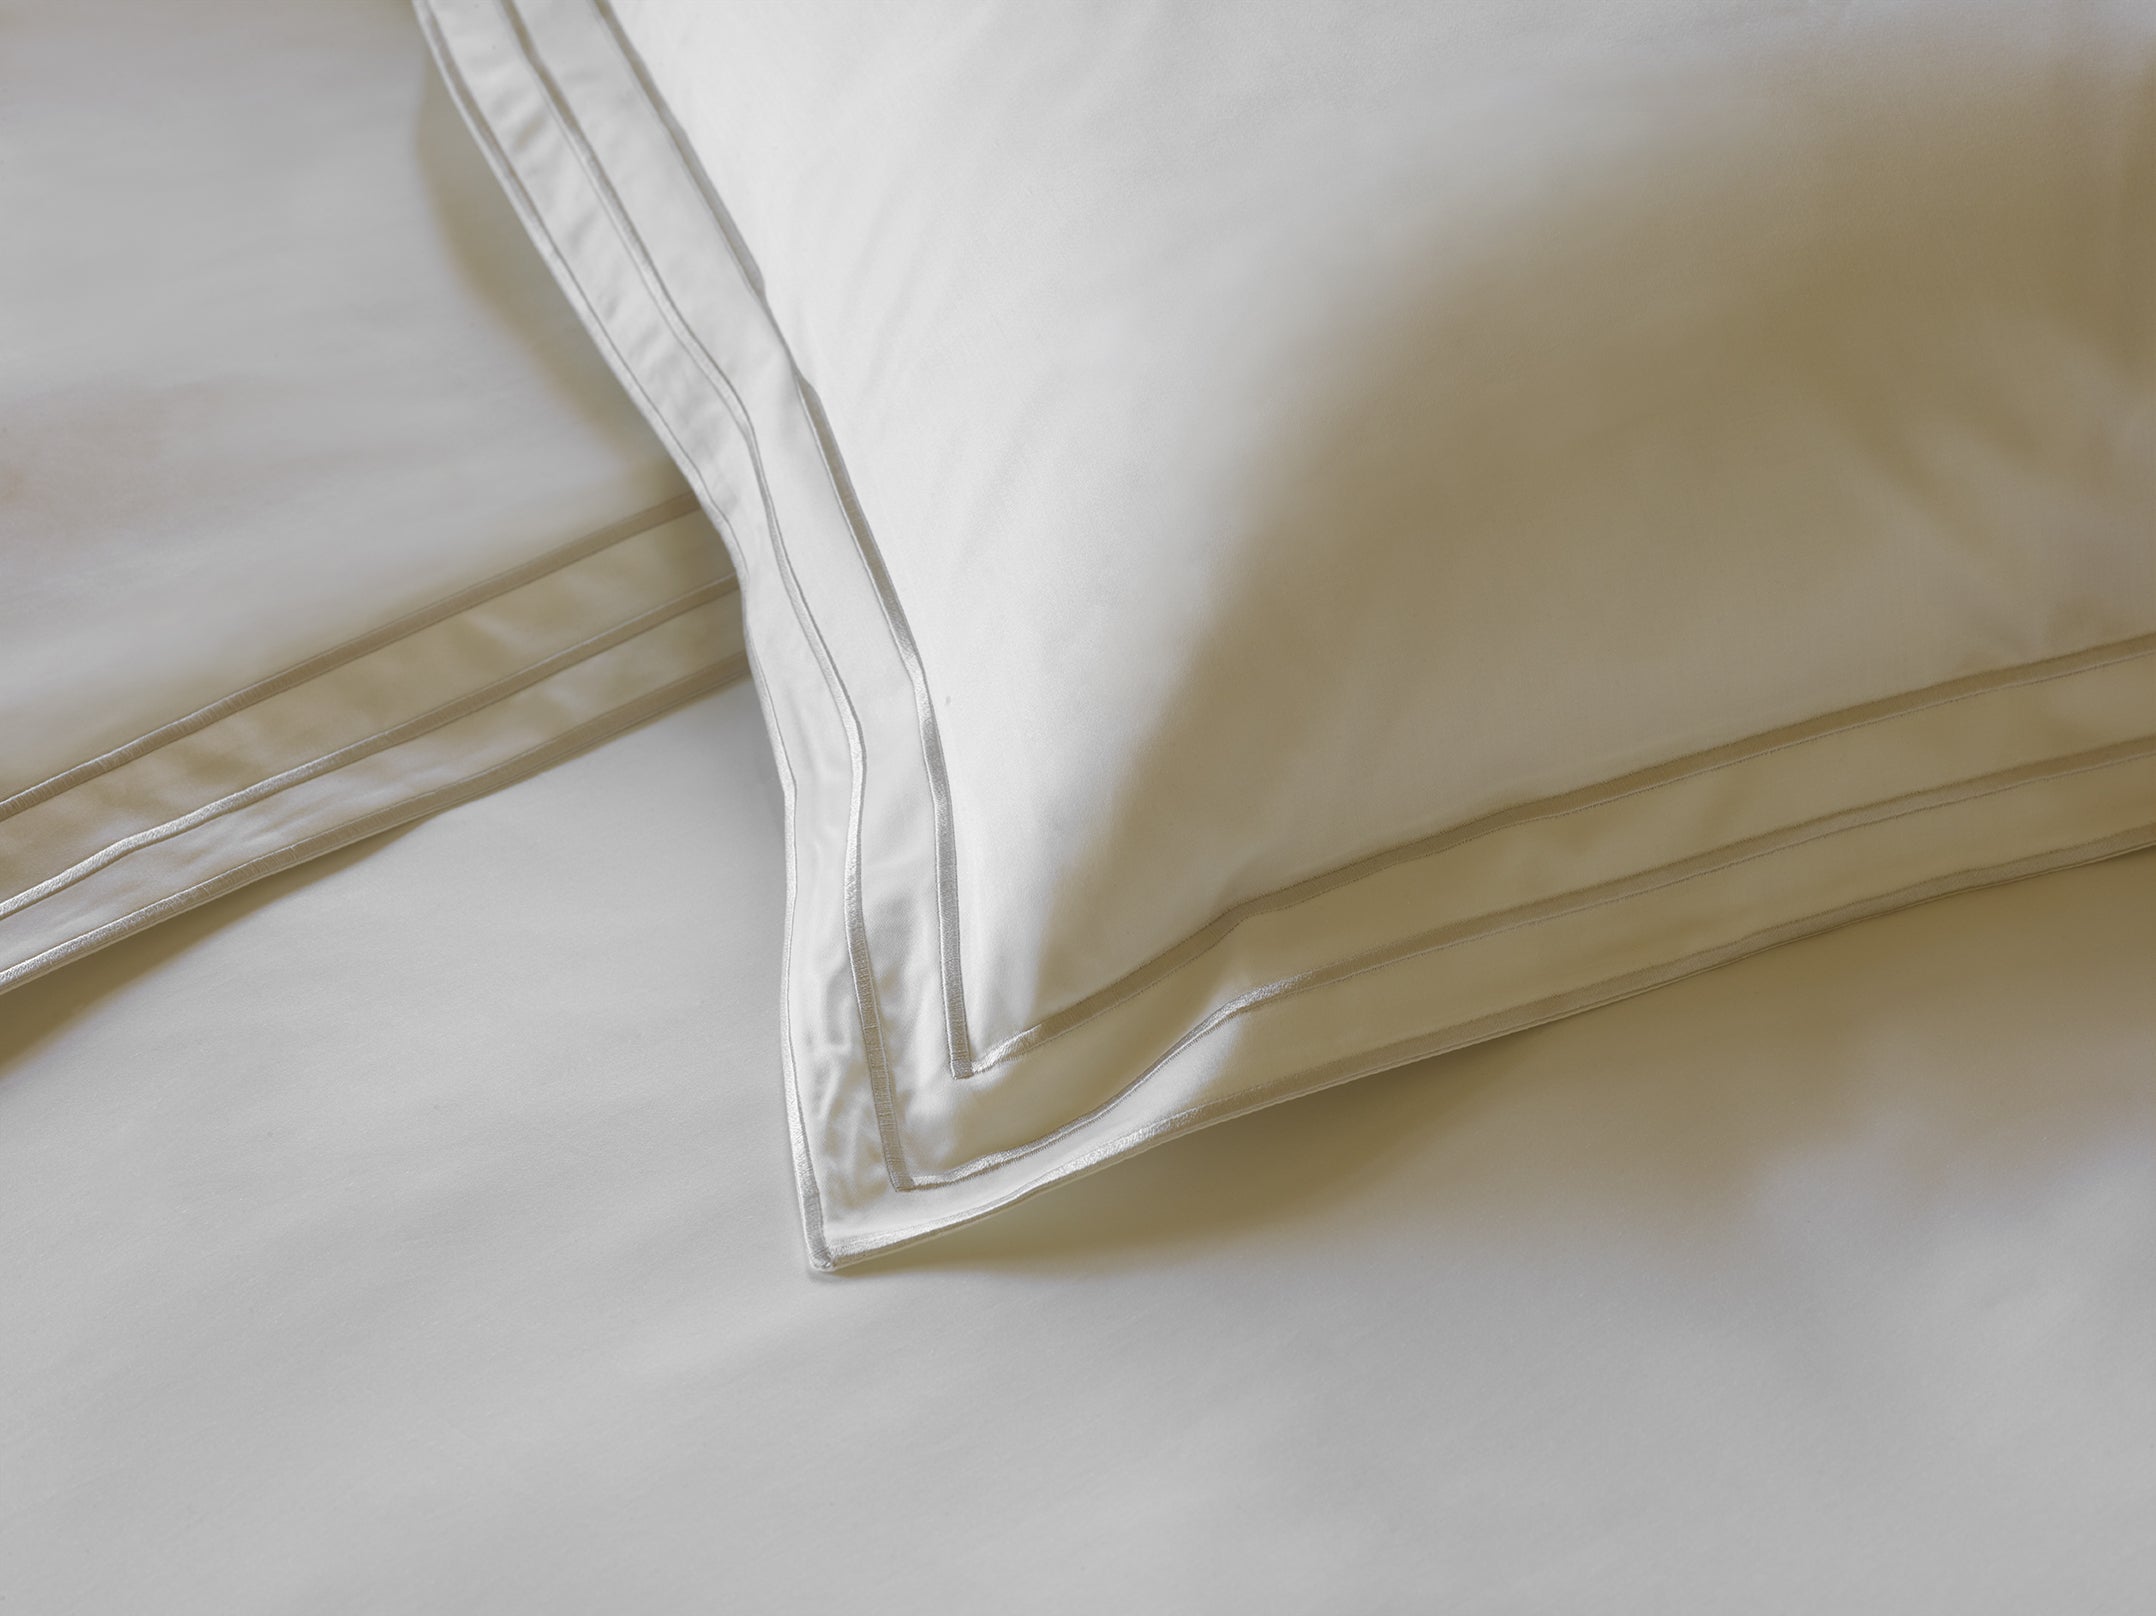 430TC Cotton Sateen Pillowcase Set | Amalia Home Alba | Oroa.com